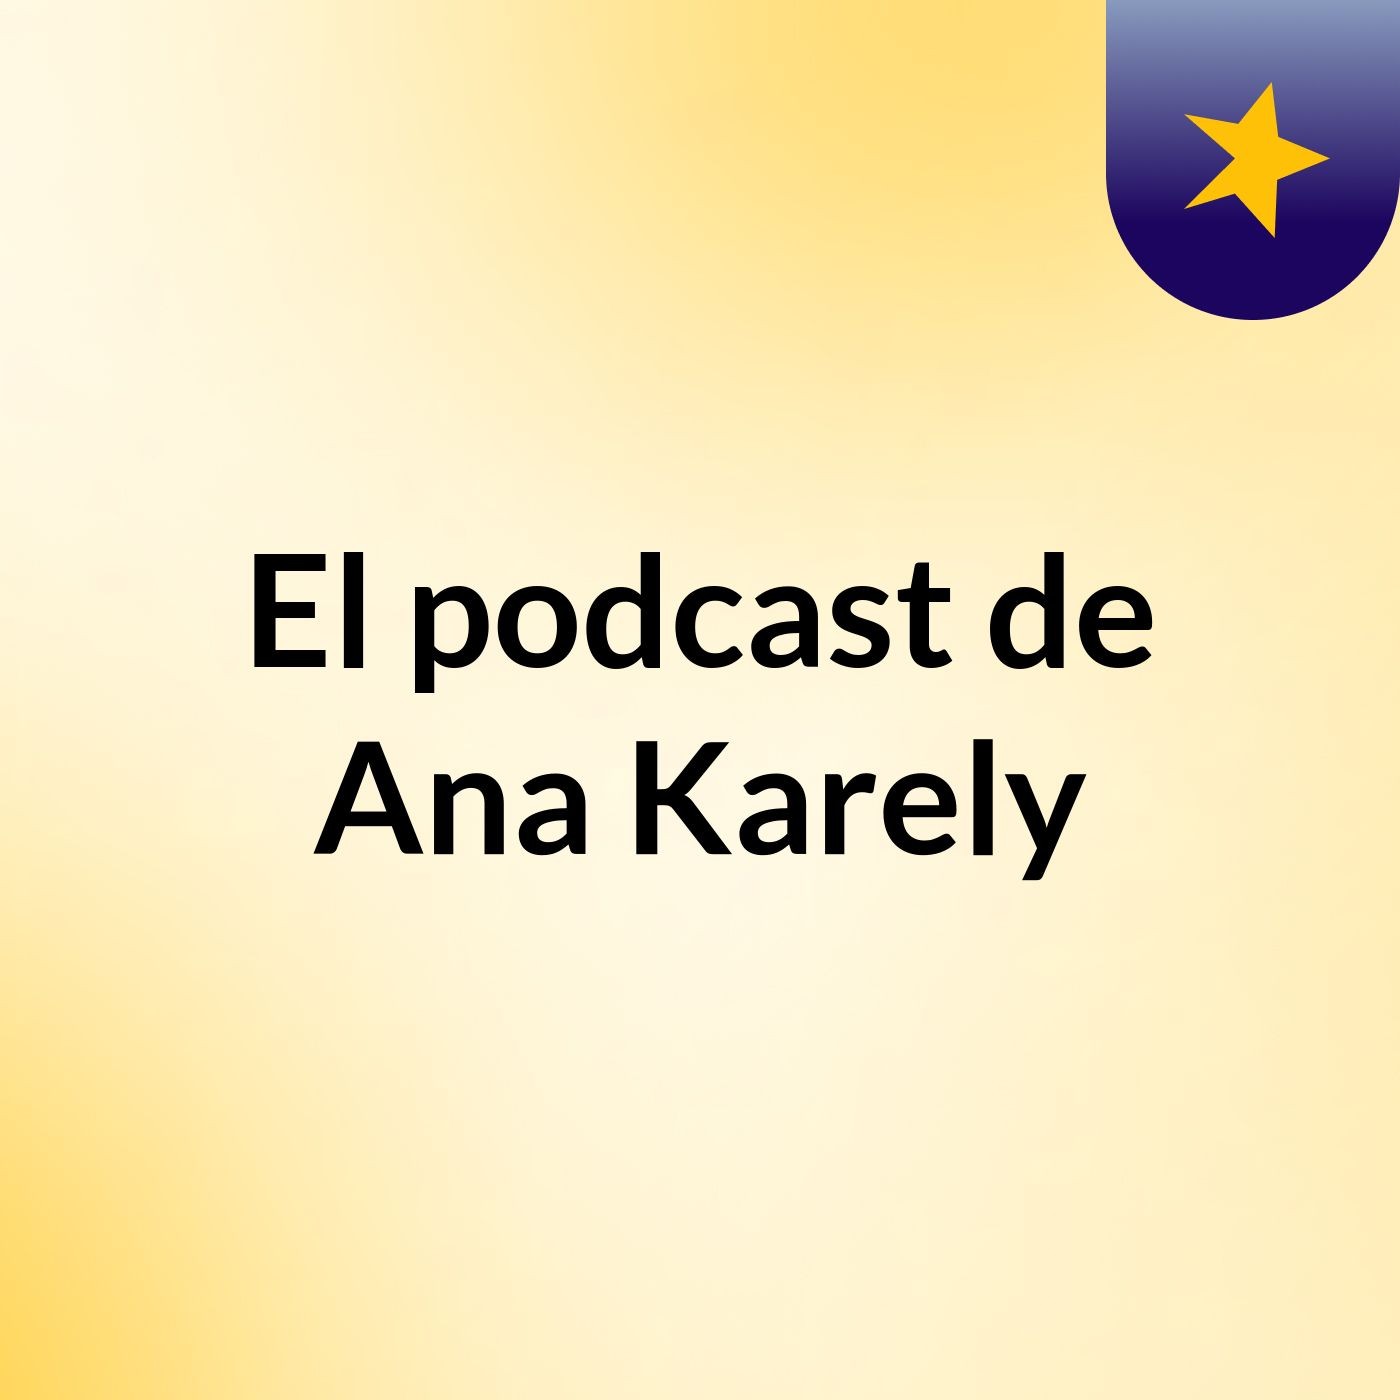 El podcast de Ana Karely